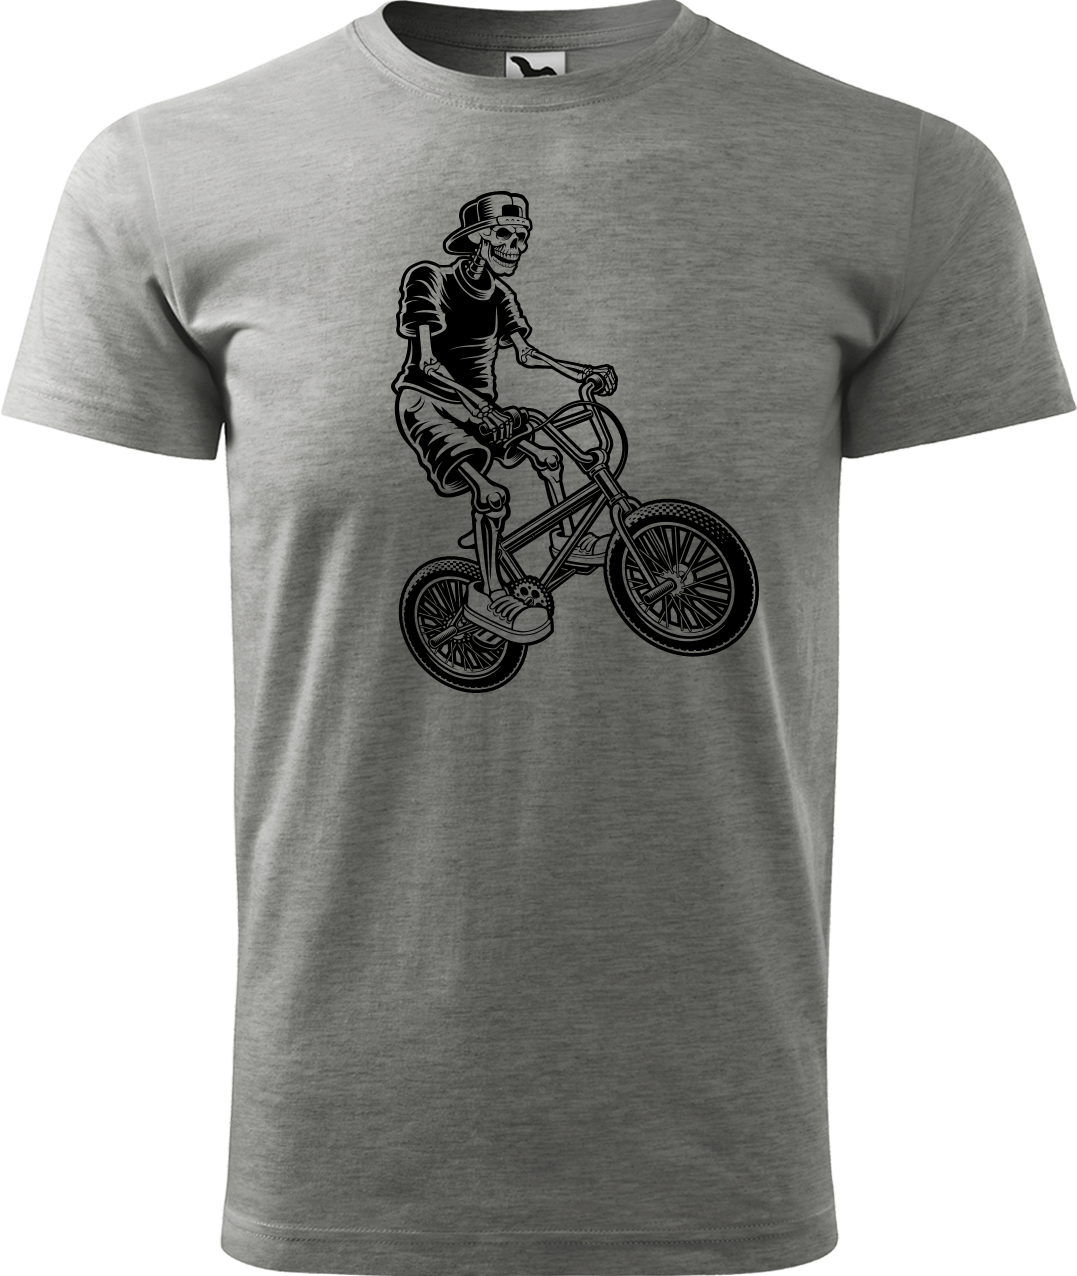 Pánské tričko s kolem - Trial Bike Velikost: L, Barva: Tmavě šedý melír (12)